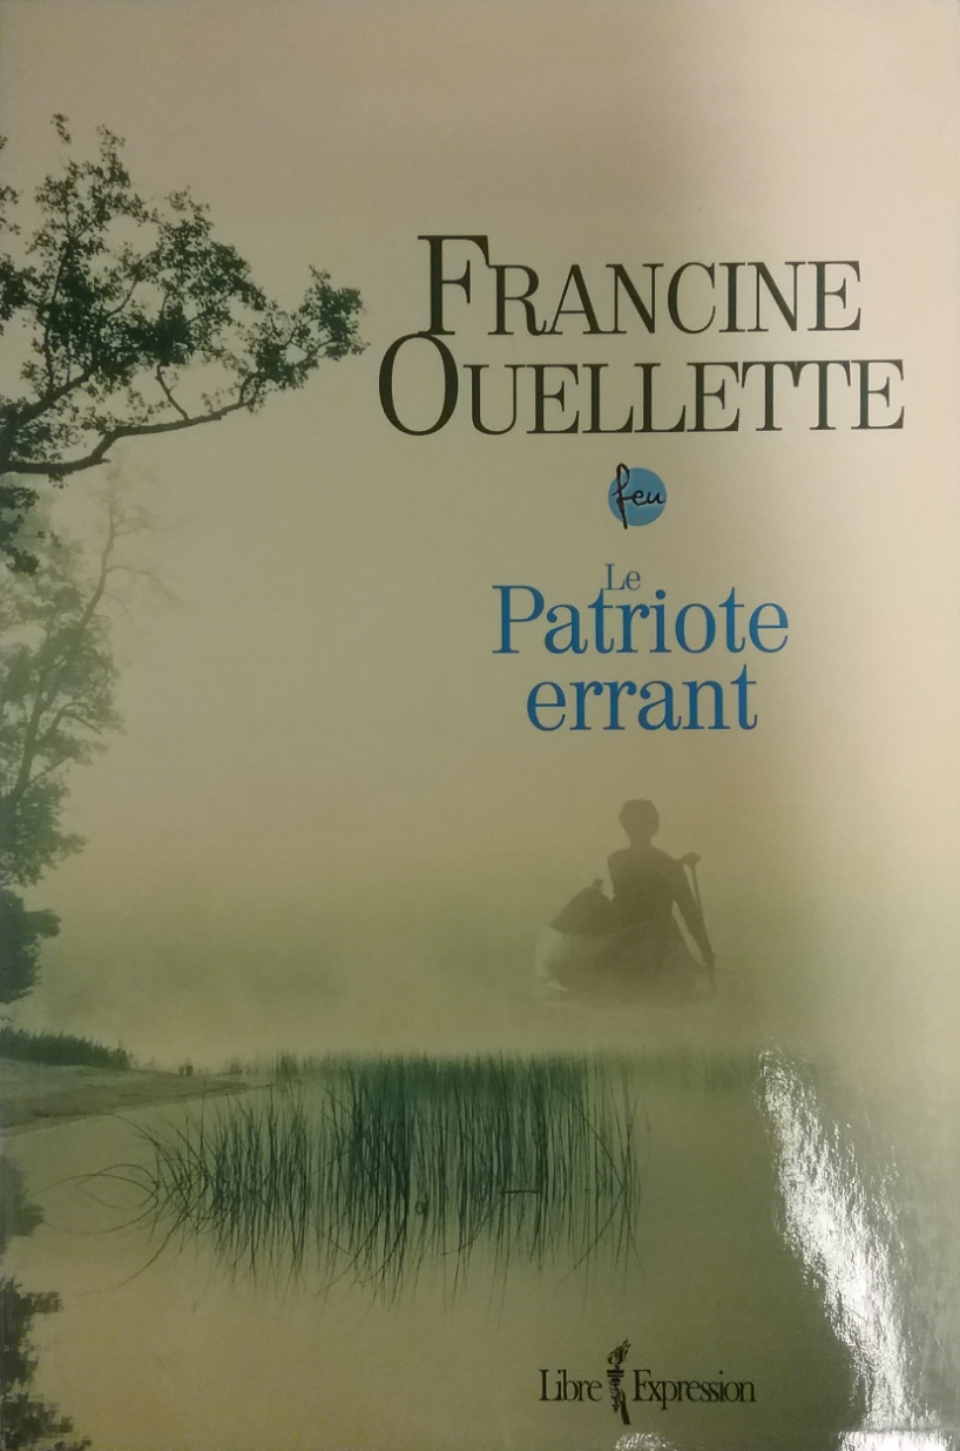 Feu Le patriote errant Francine Ouellette